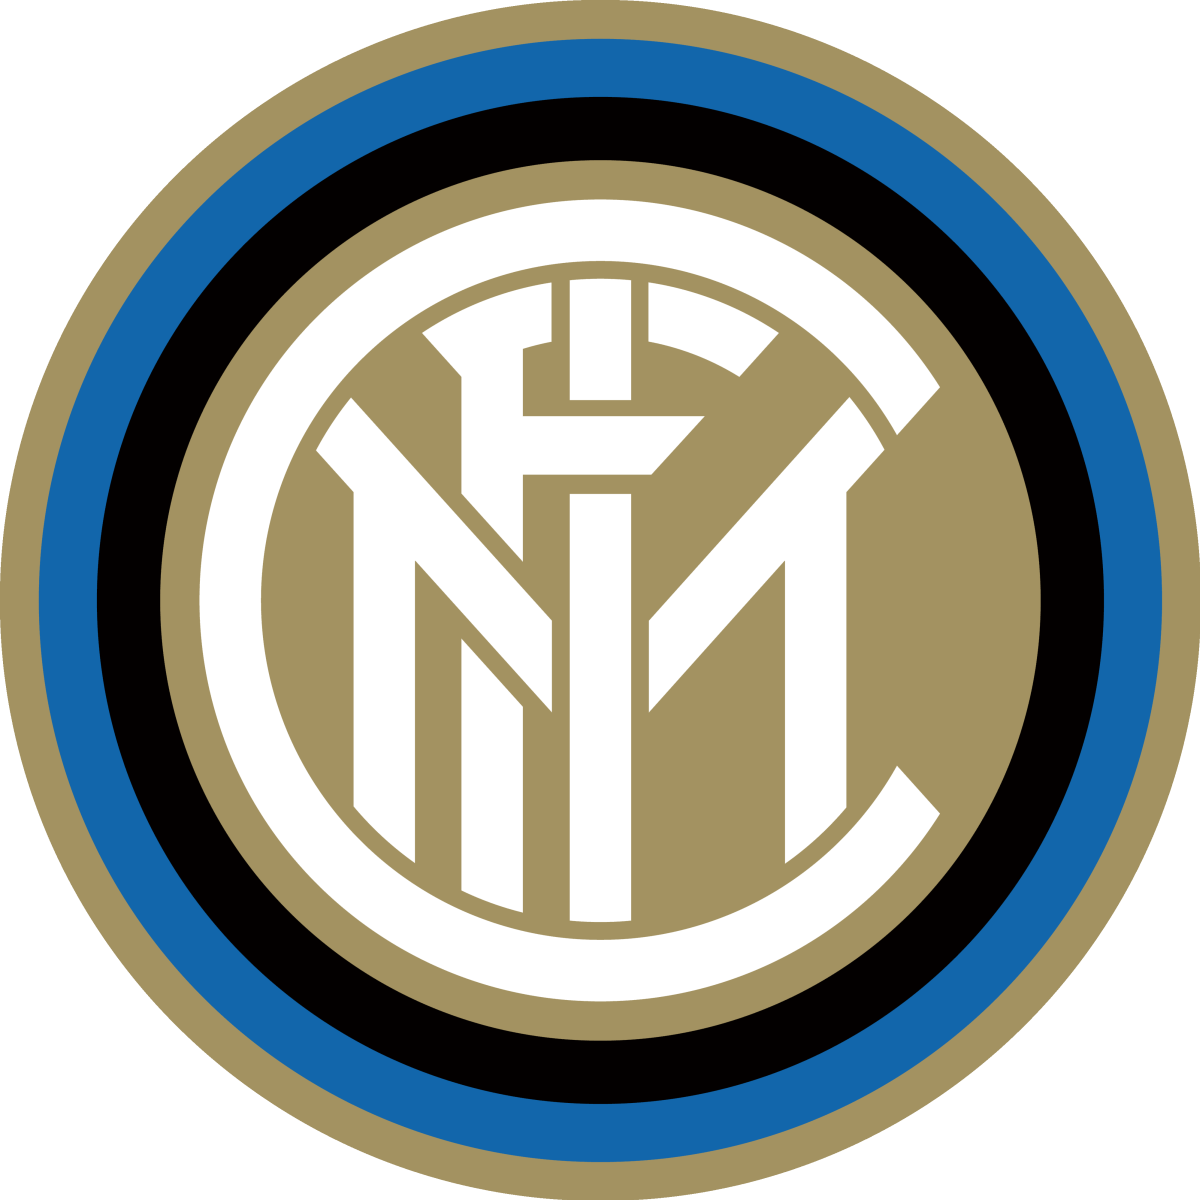 Inter Logo - Inter Milan